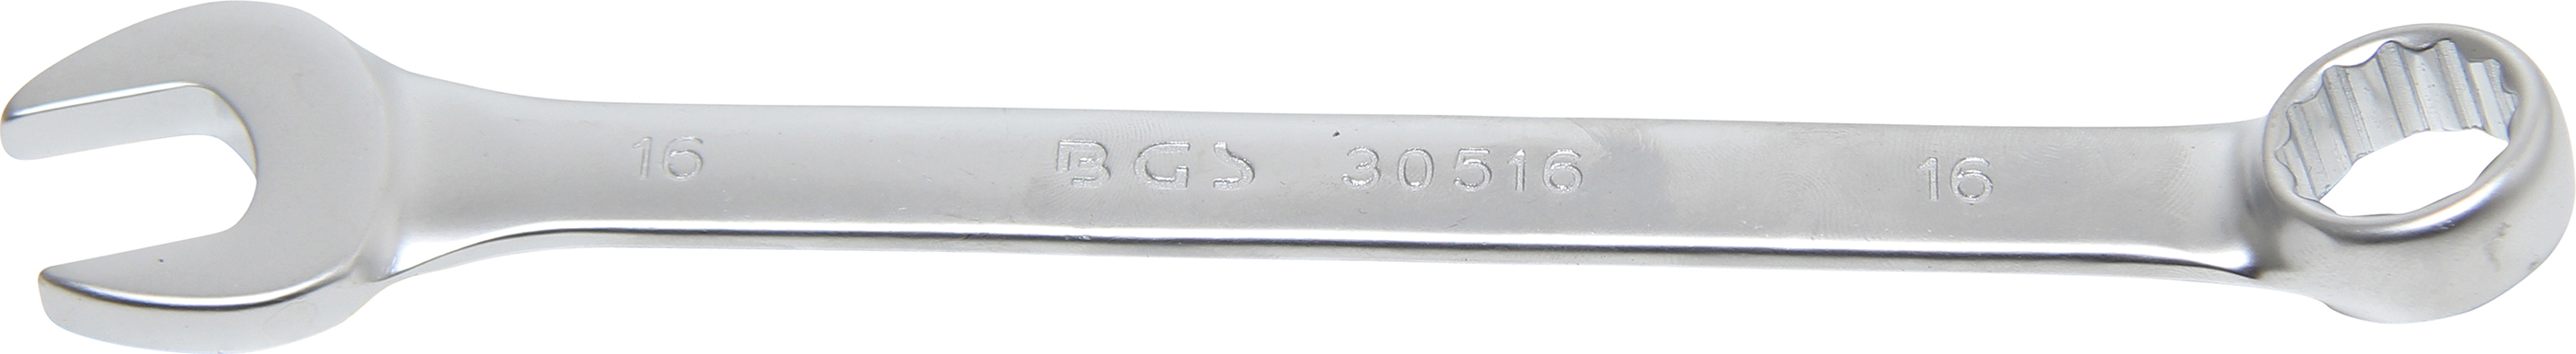 BGS 30516 Cheie combinata, 16 mm